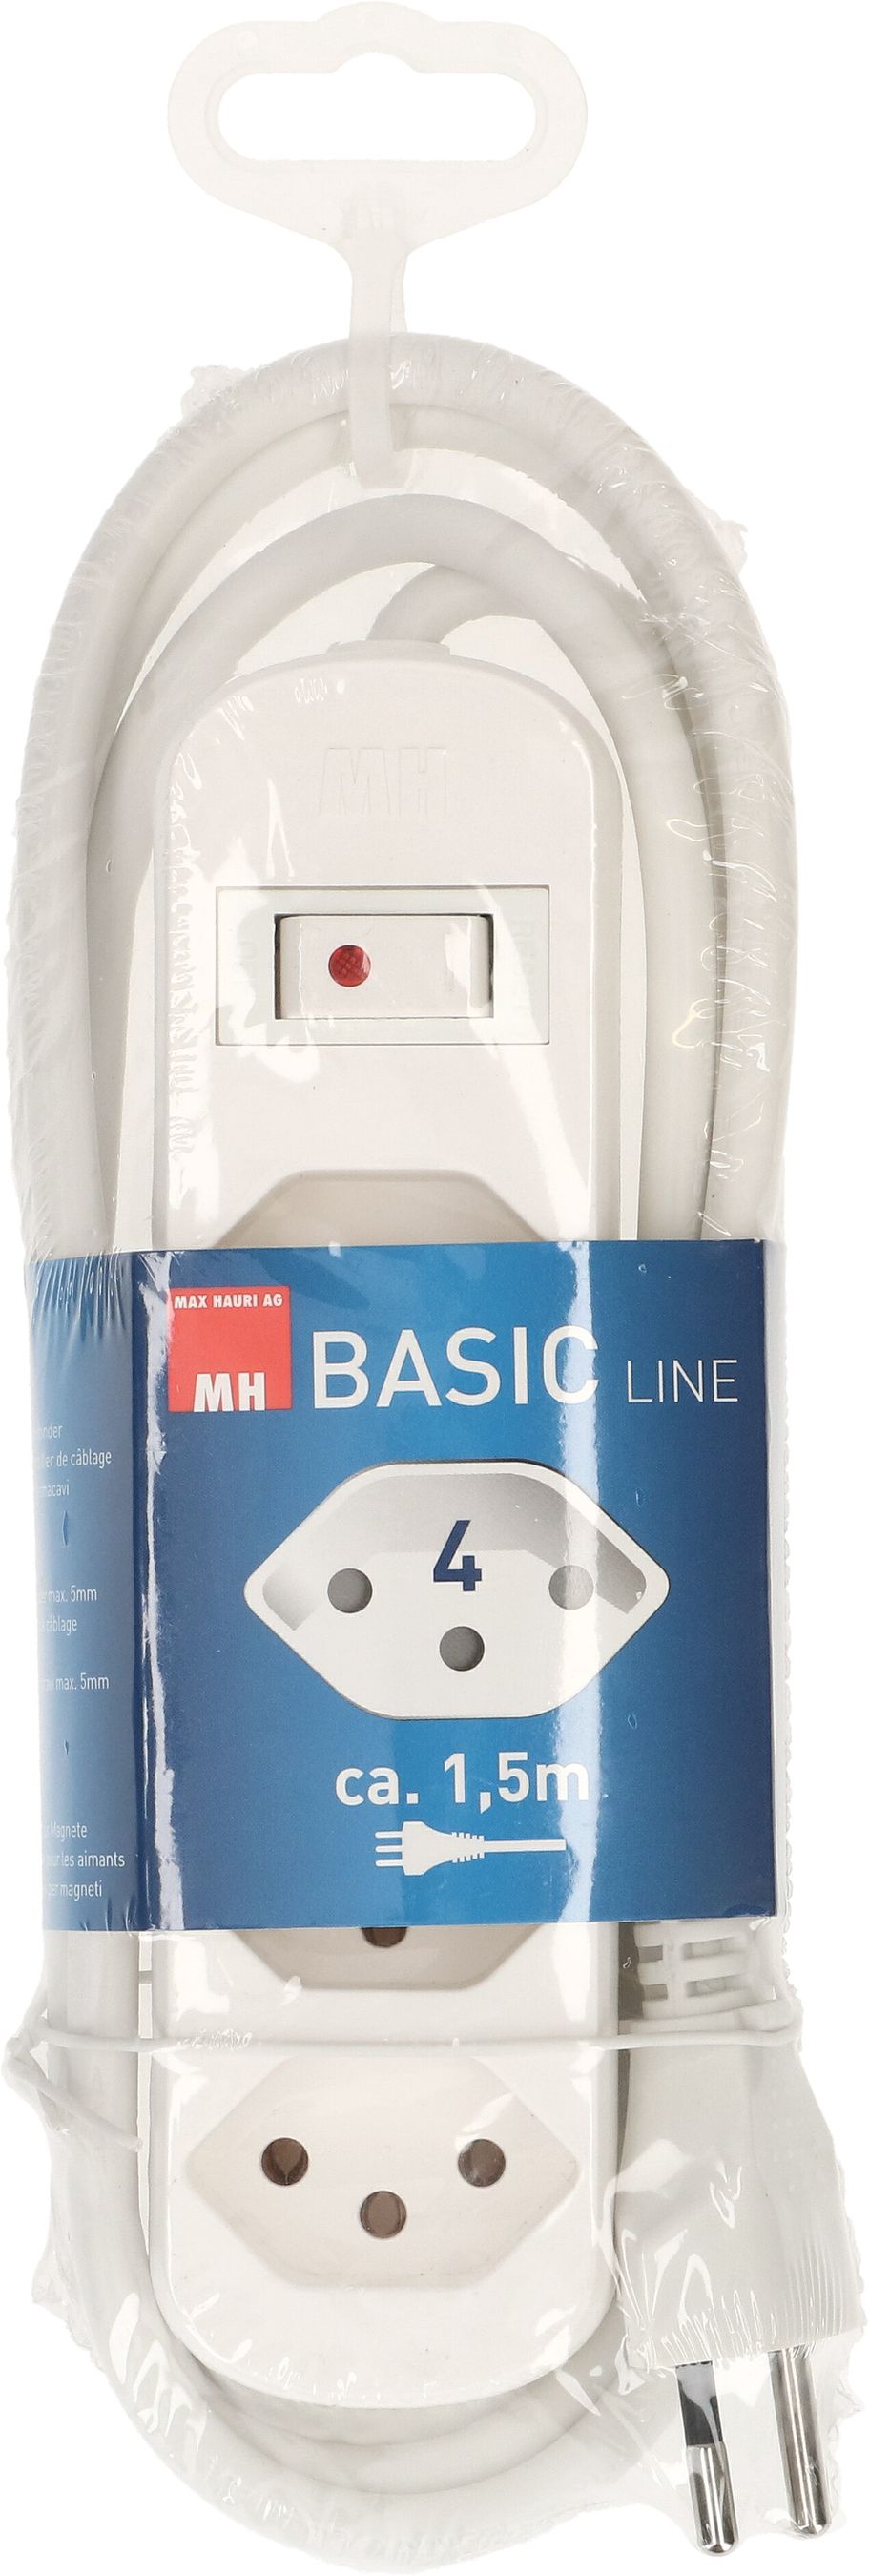 Steckdosenleiste Basic Line 4x Typ 13 weiss Schalter 1.5m